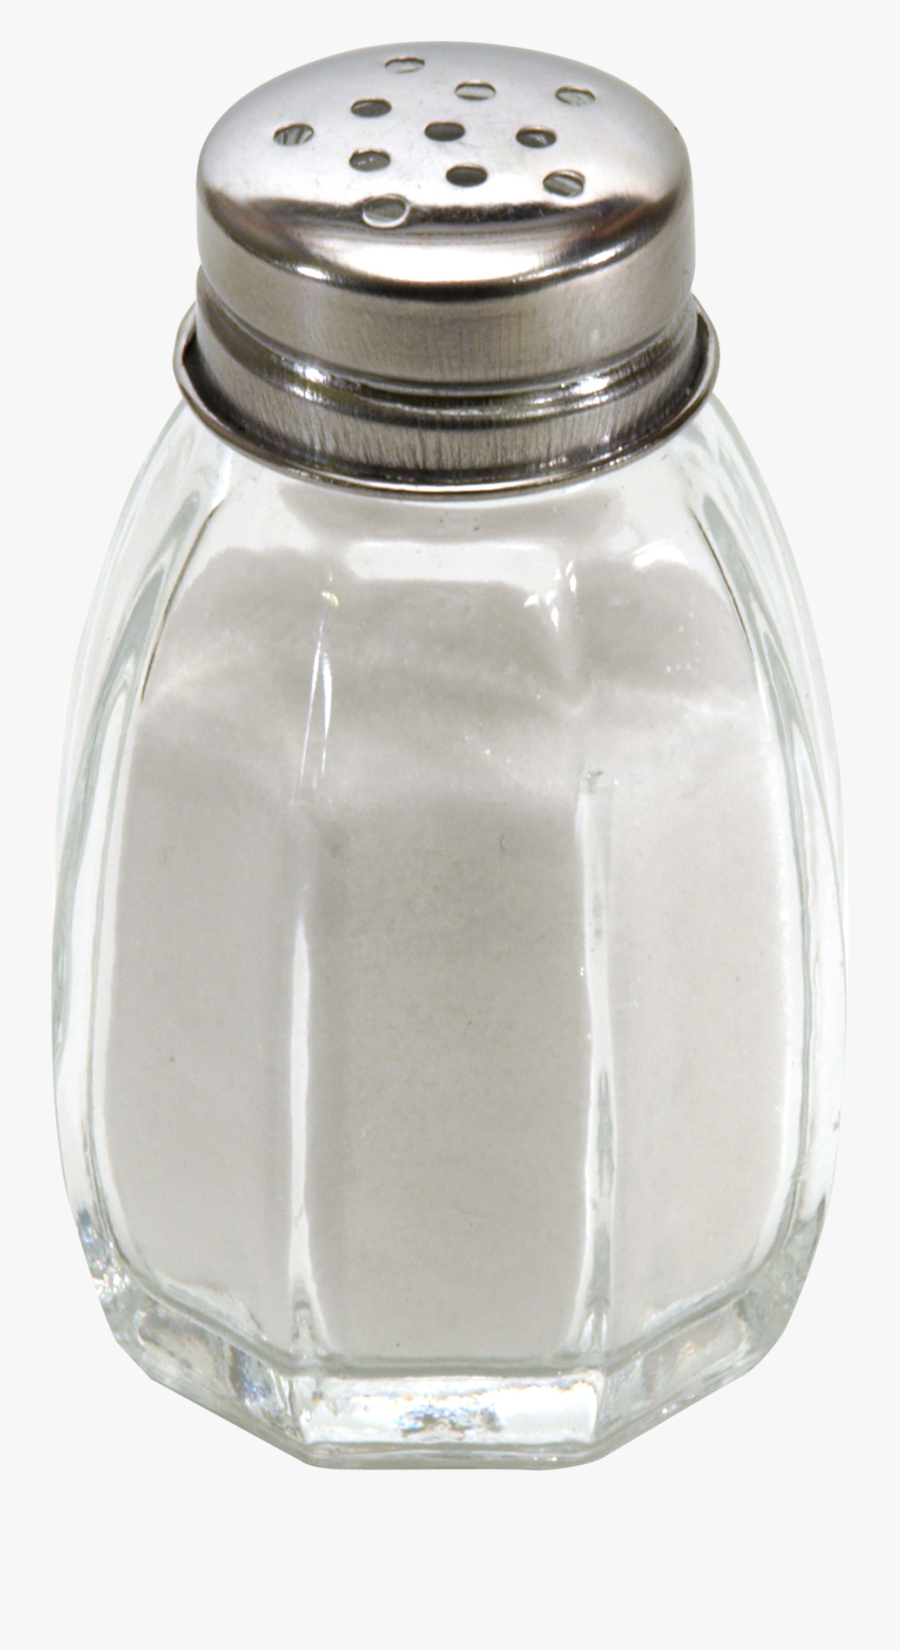 Salt Shaker Png Transparent Image - Salt Shaker Transparent Background, Transparent Clipart